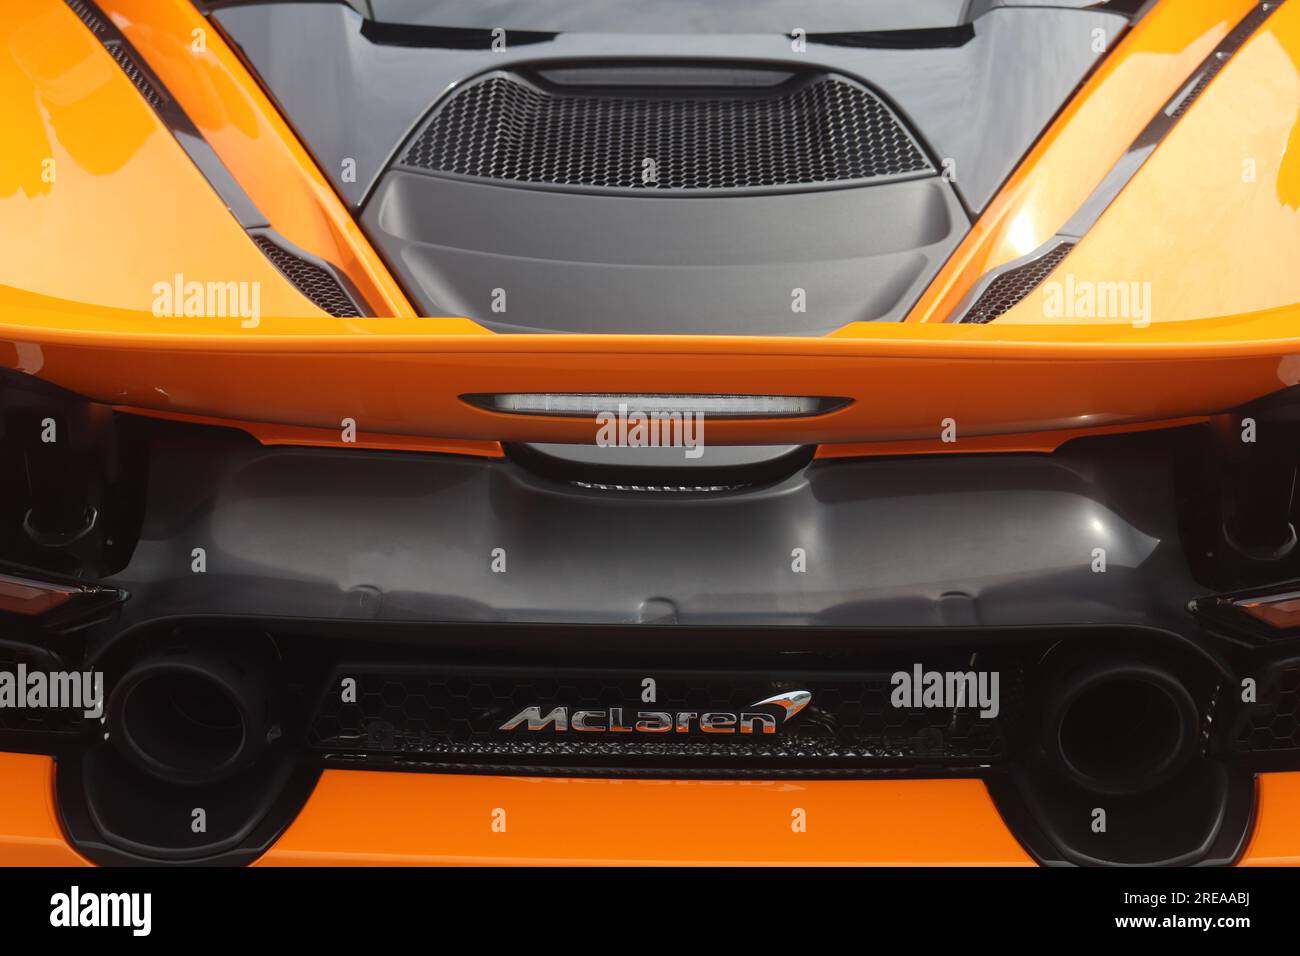 McLaren rear car orange Stock Photo